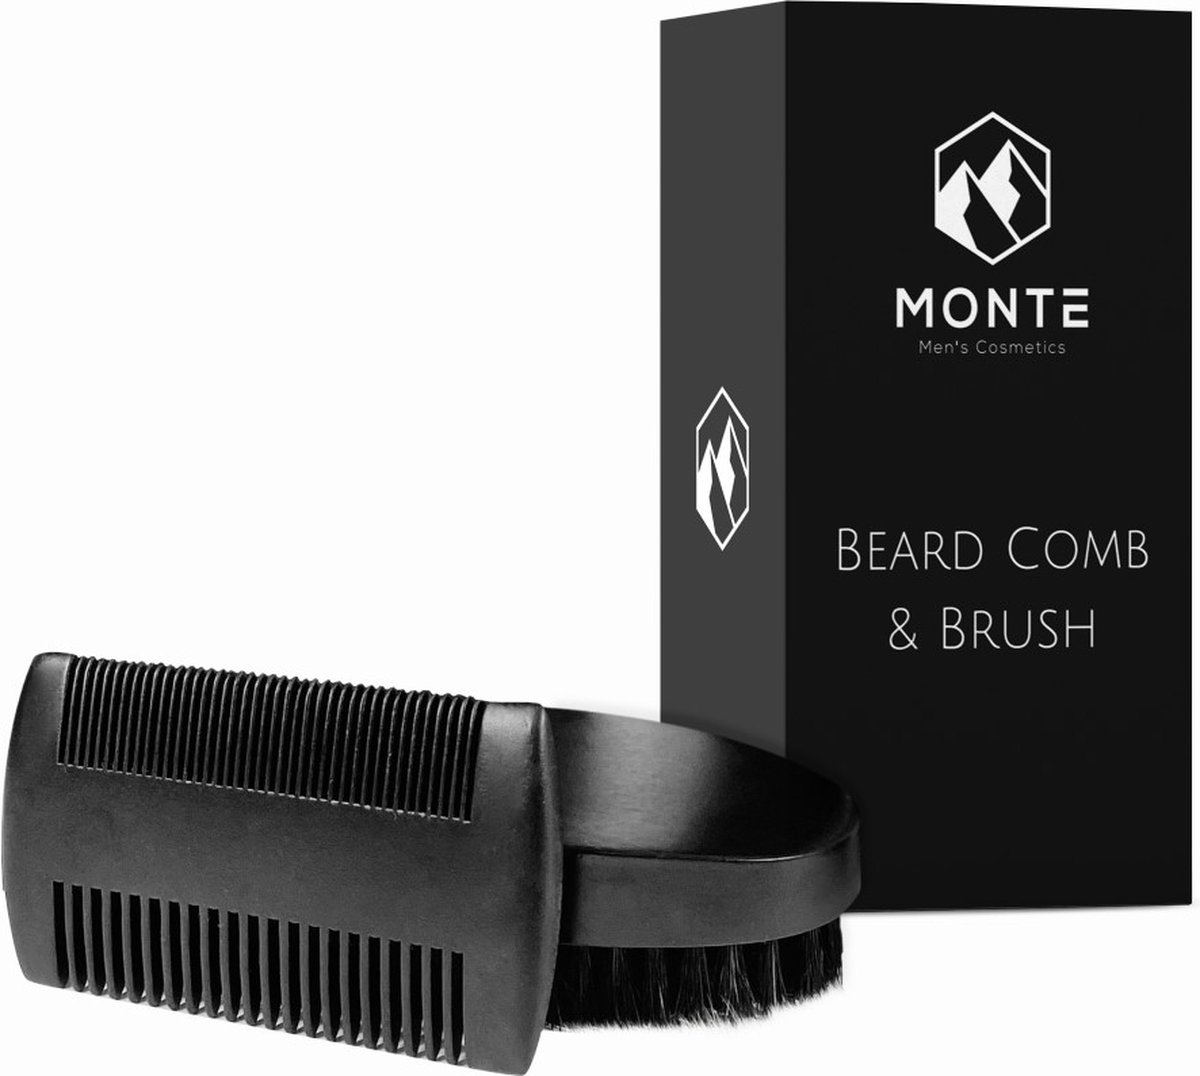 MONTE - Beard Comb & Brush - Luxe Baardkam & Baardborstel - Zwart - Compact en stijlvol